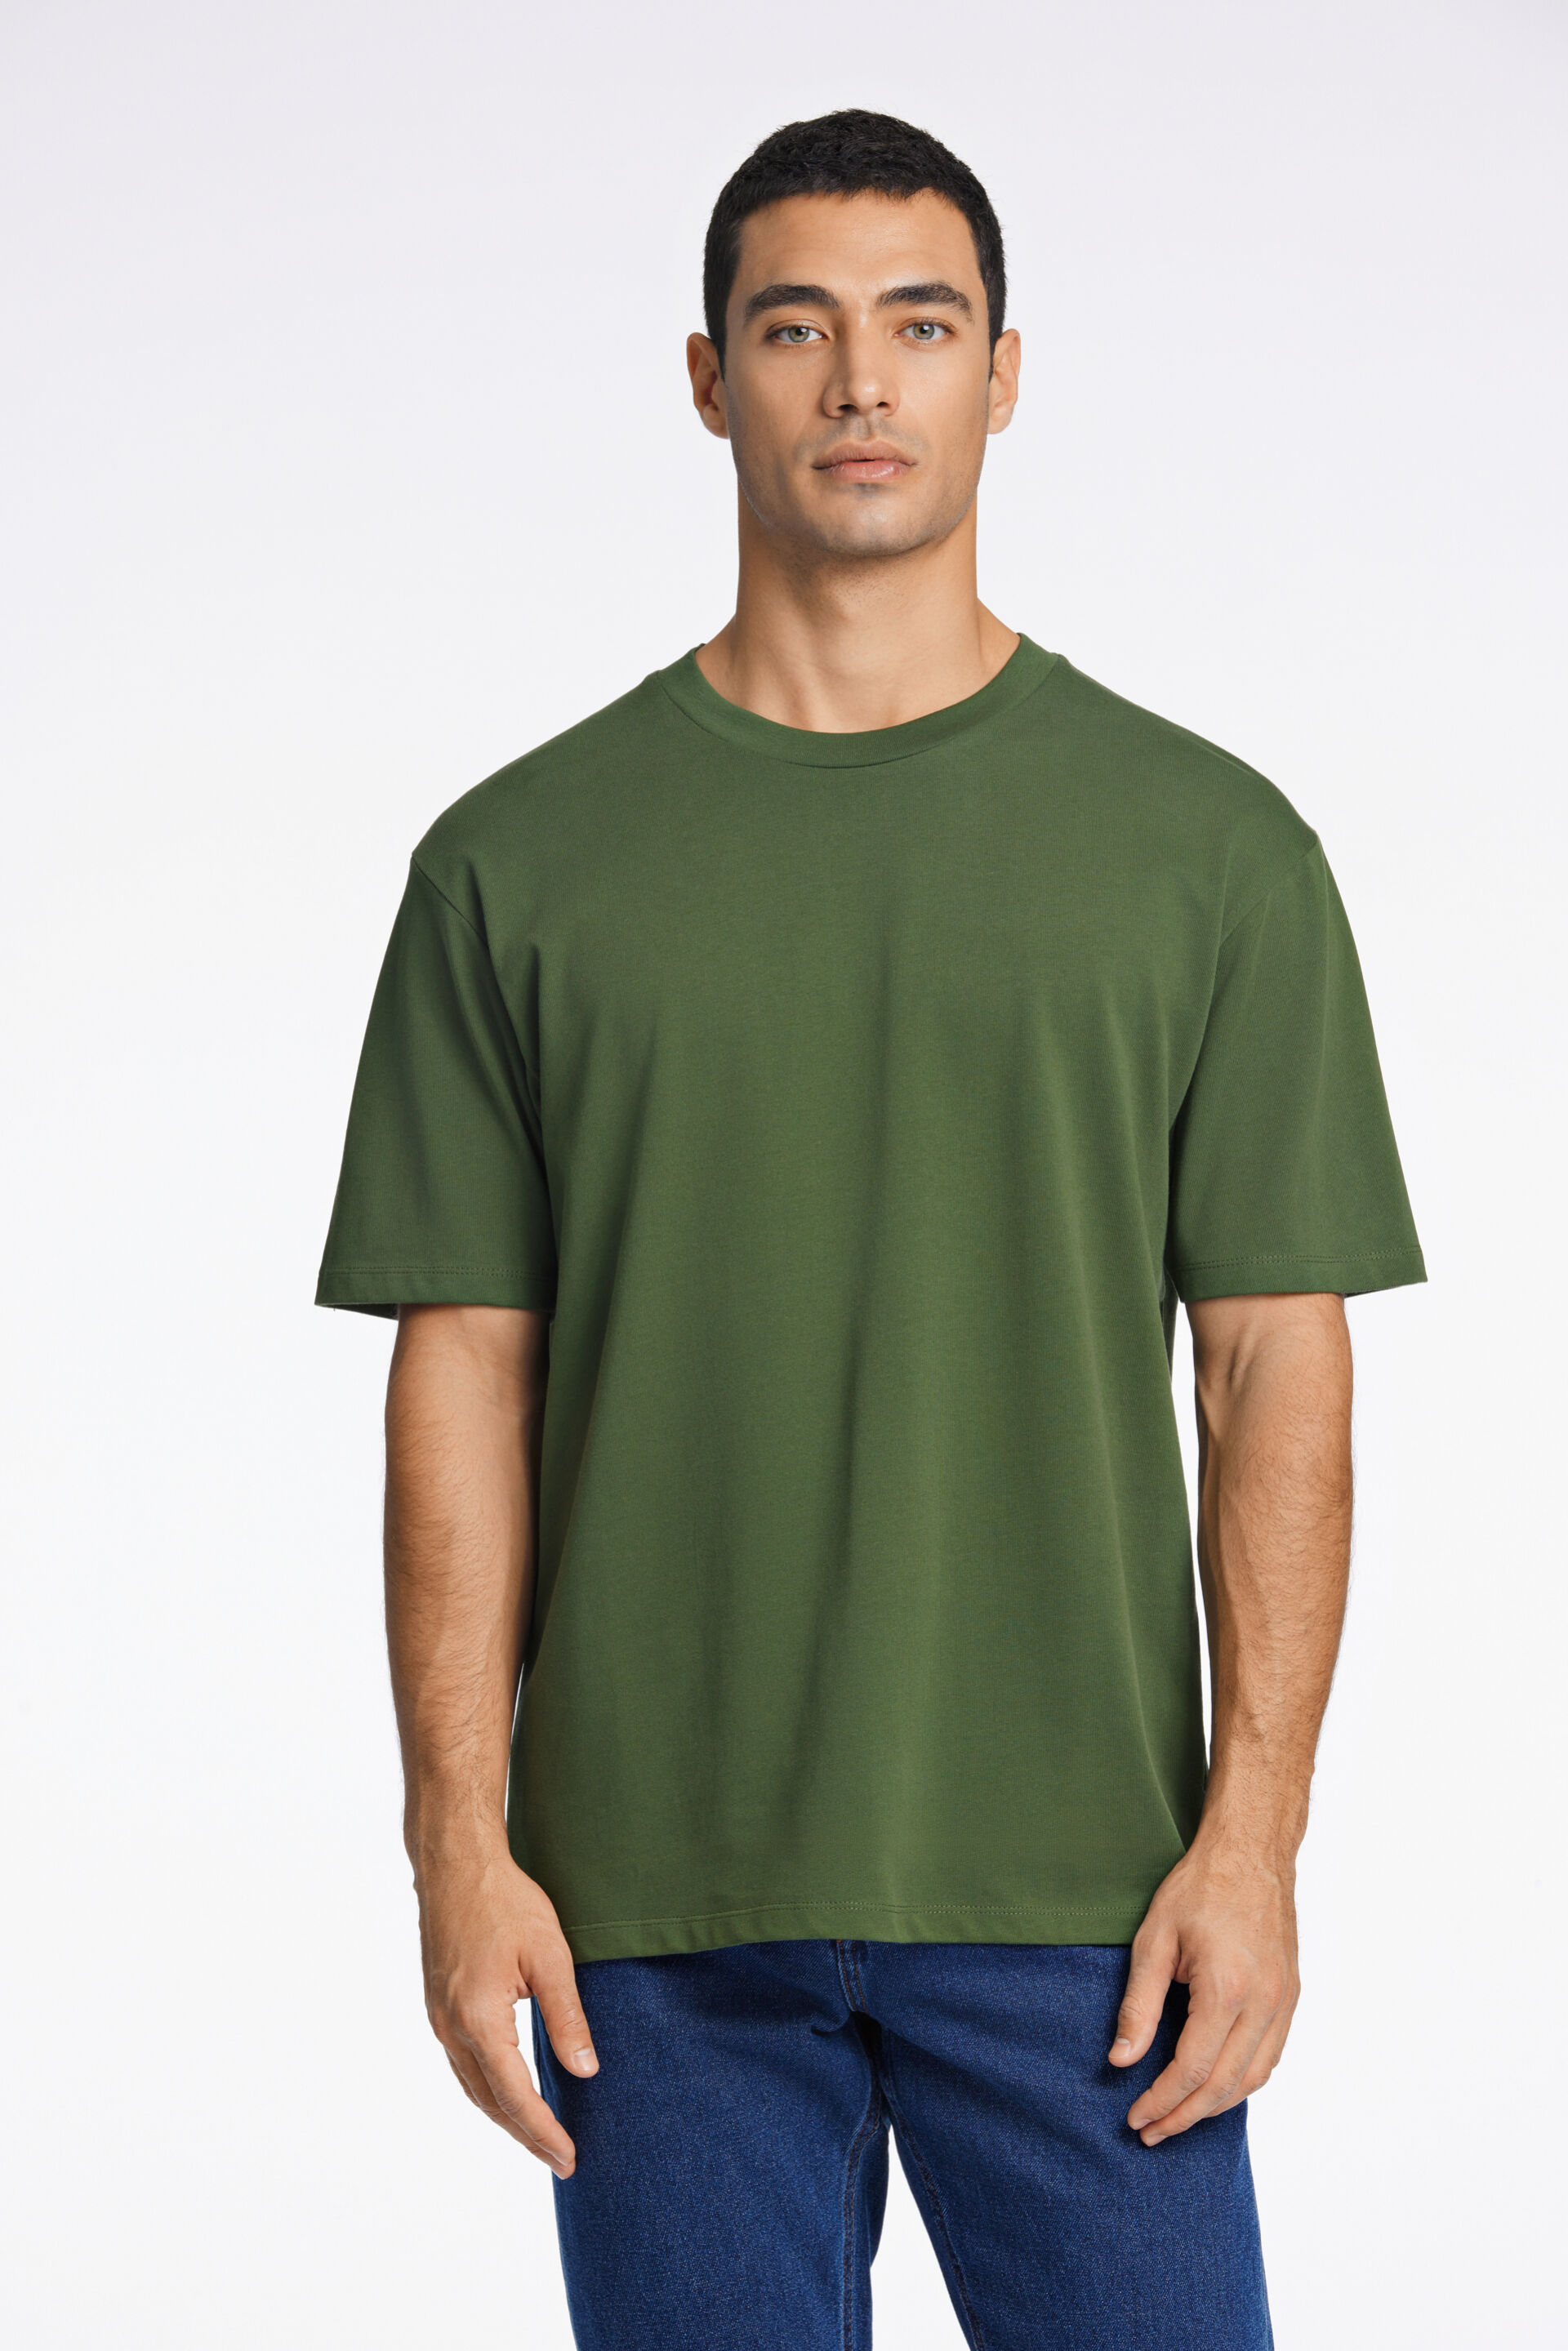 T-shirt T-shirt Groen 30-400120